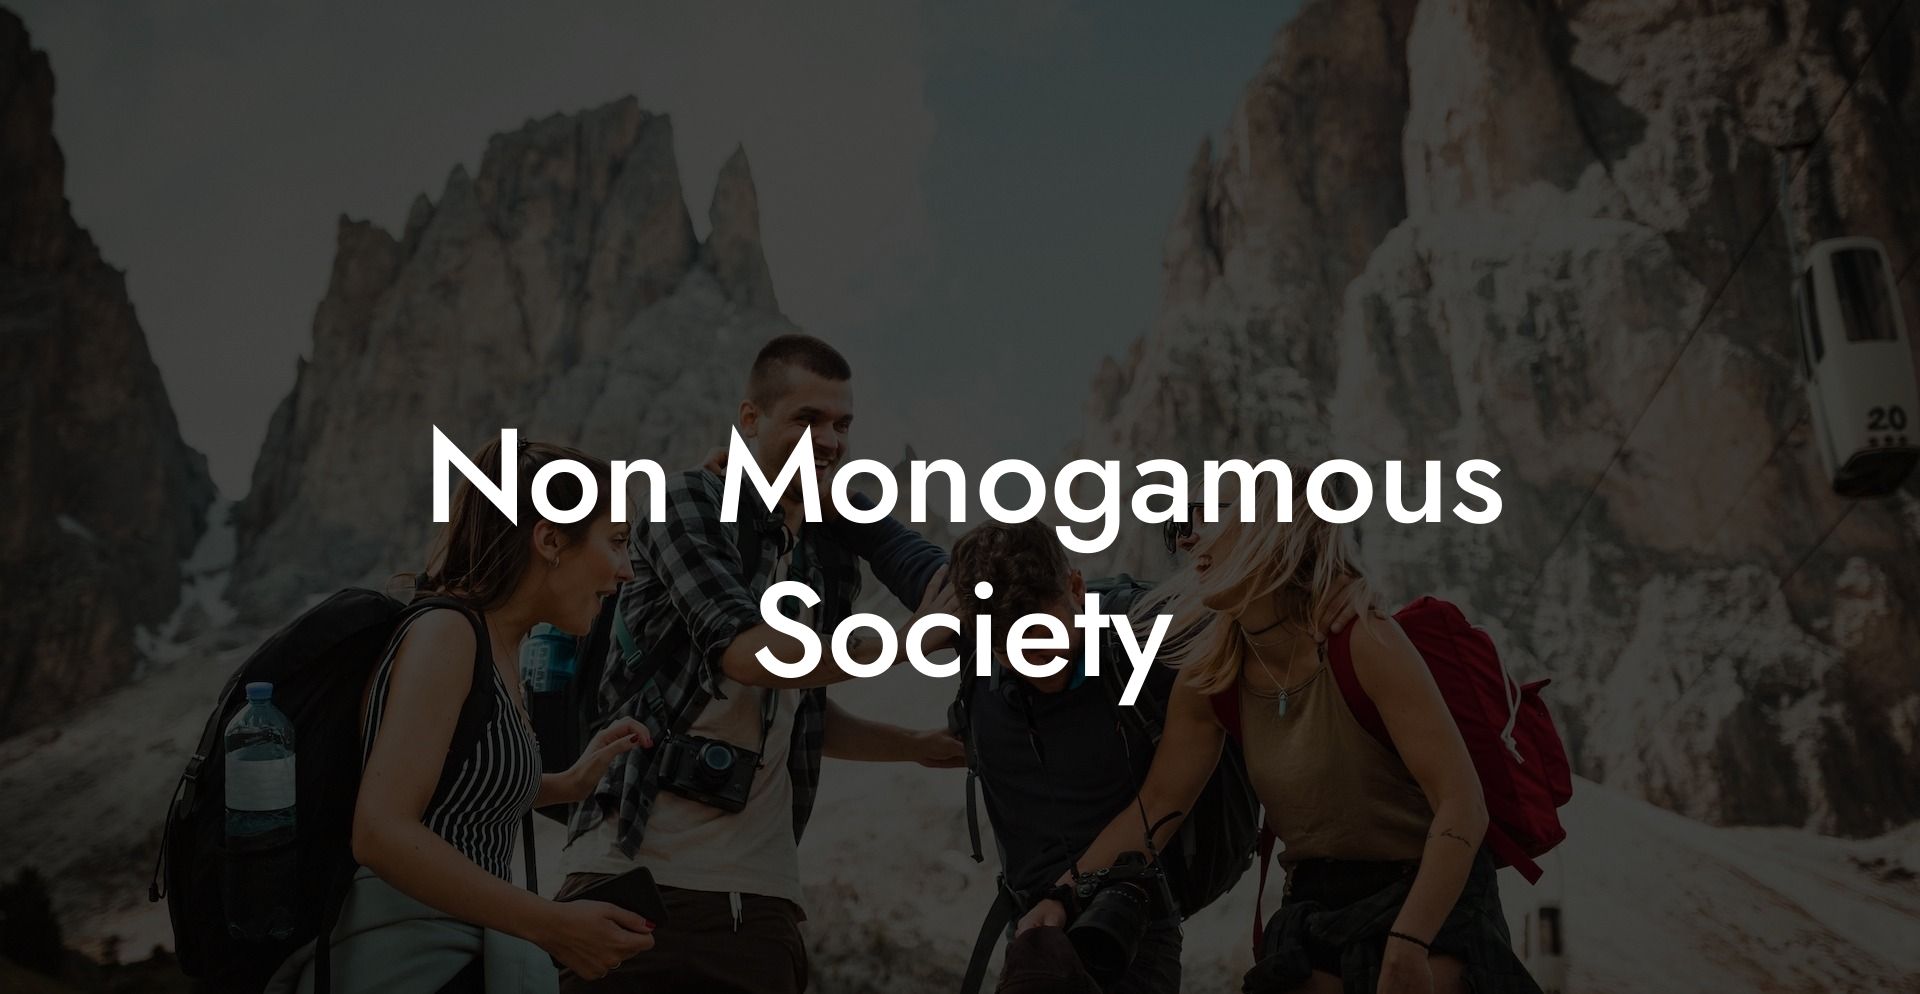 Non Monogamous Society